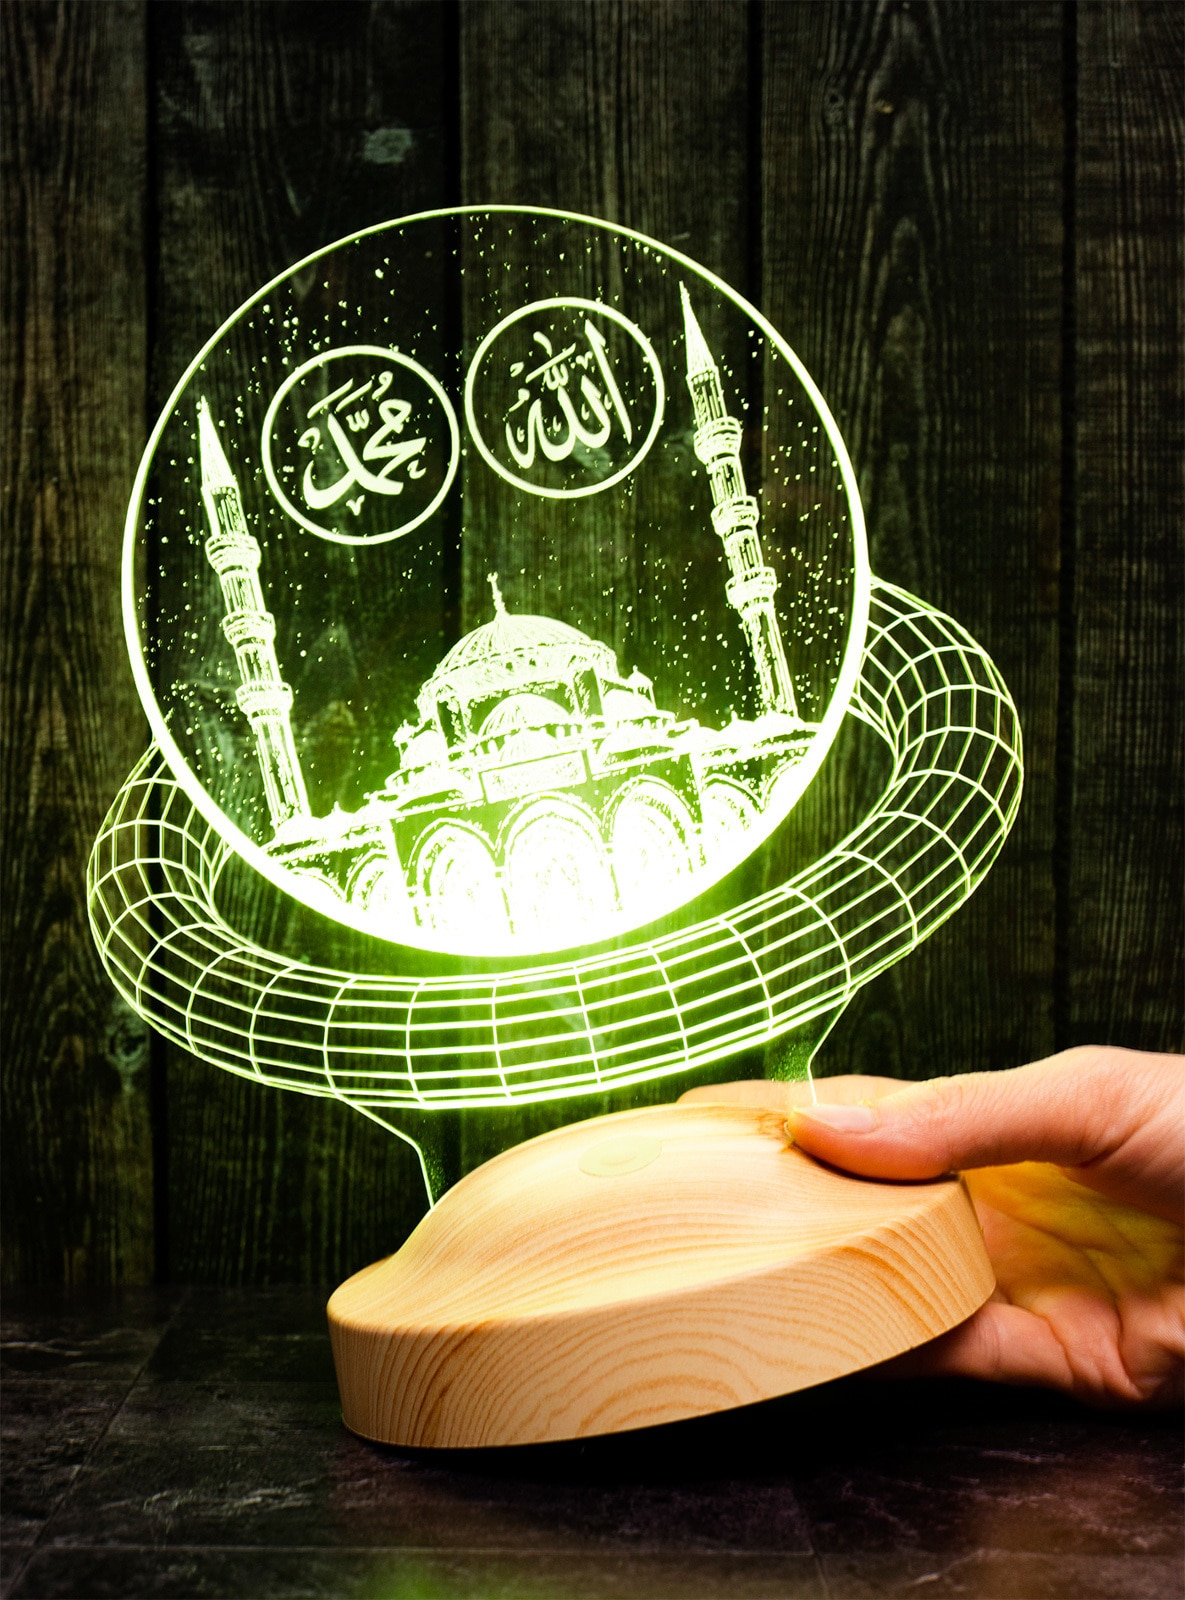 Kabe Led Lampe, Geschenk für muslimischen Freund Freundin, Ramadan Geschenk